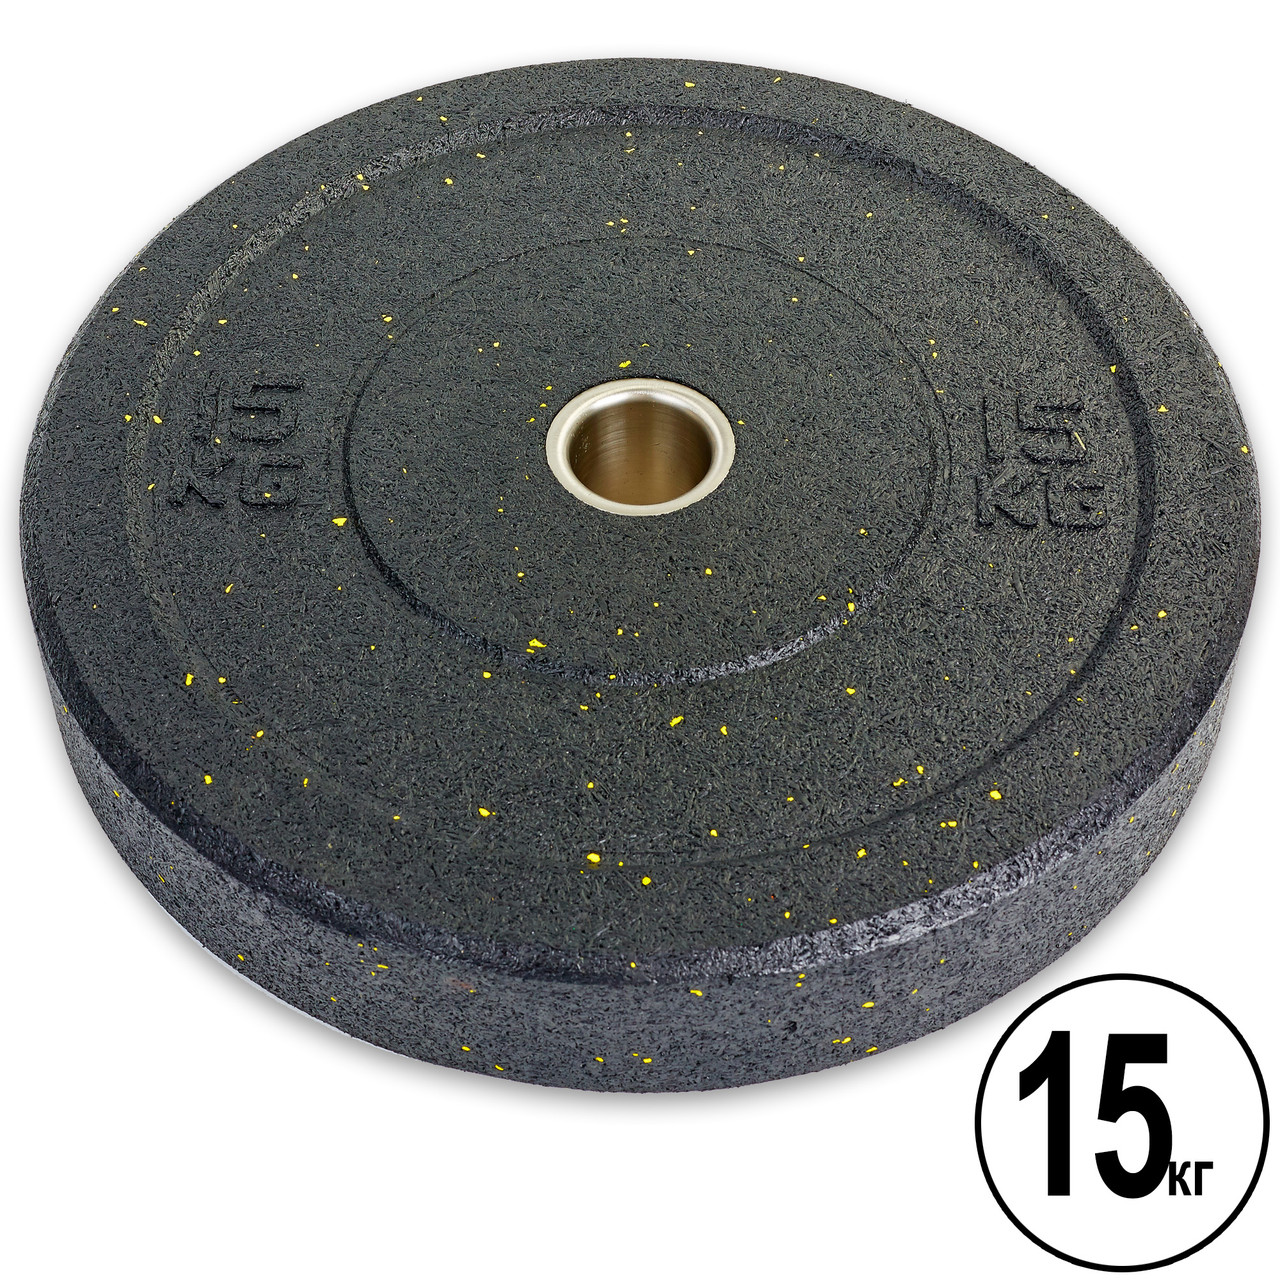 Блины (диски) Бампер структурные d-51мм RAGGY 15кг ТА-5126-15